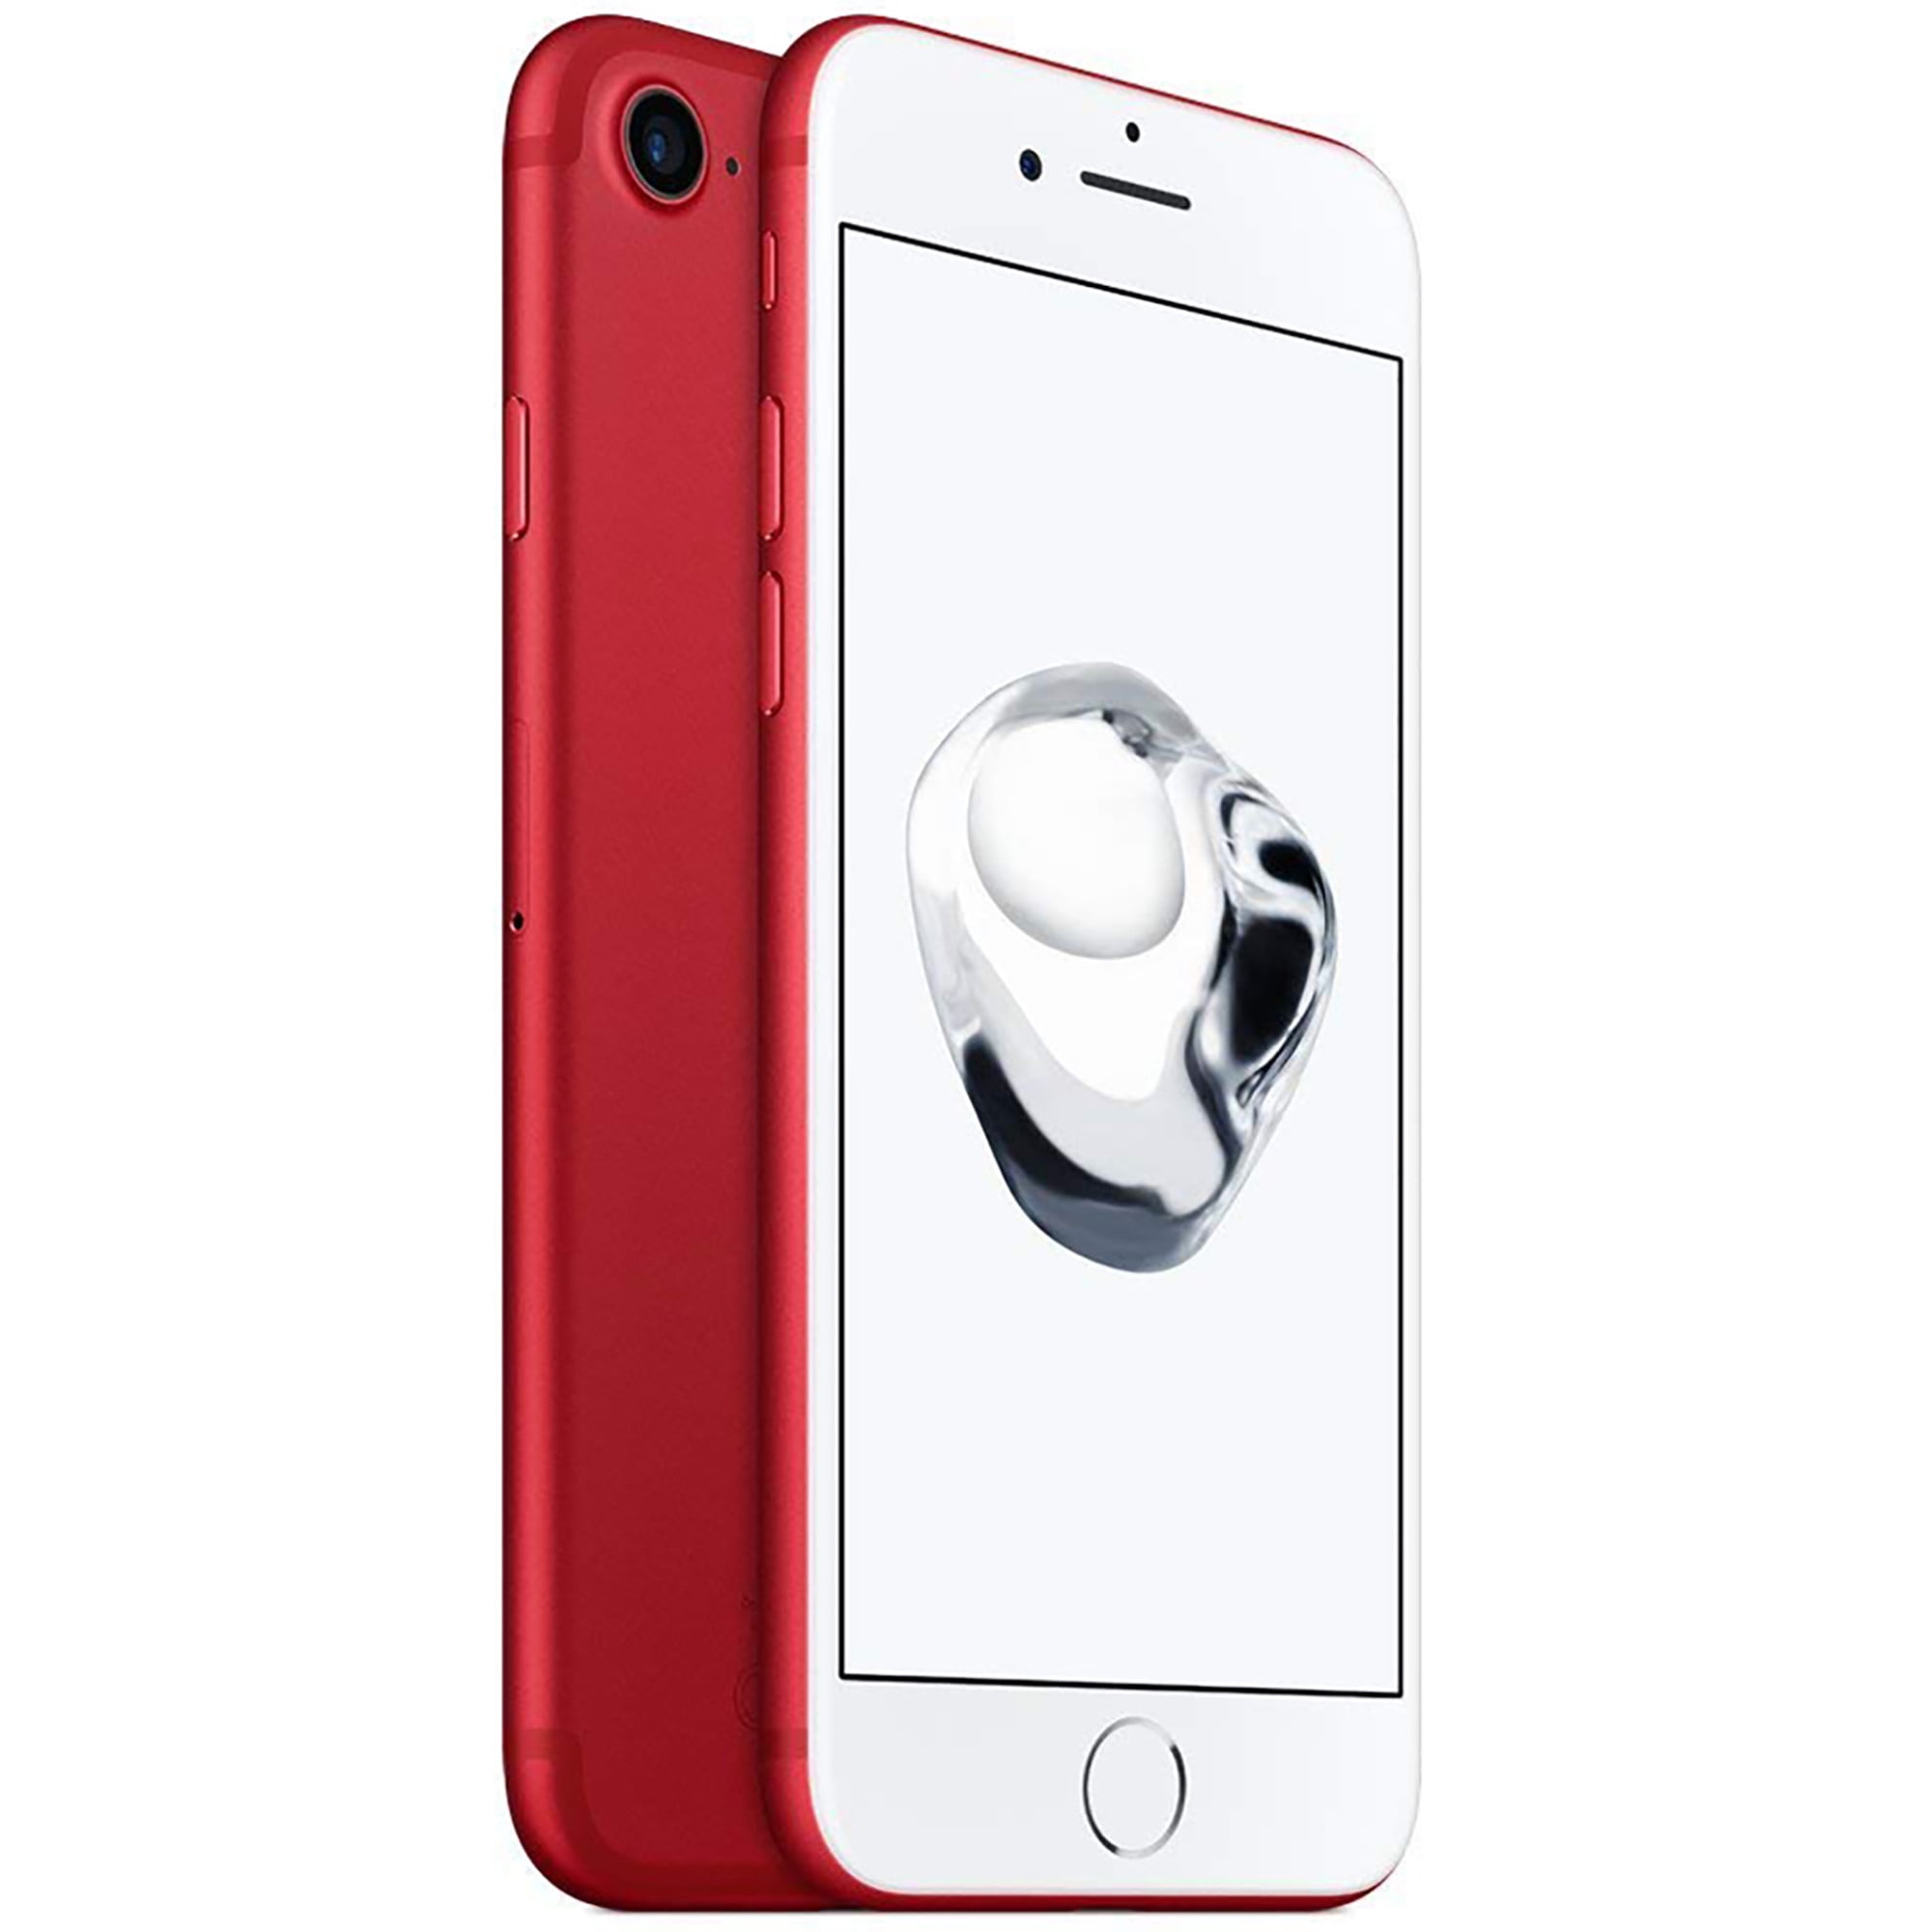 スマートフォン/携帯電話 スマートフォン本体 Apple iPhone 7 128GB GSM Unlocked - Red (Used) + Ting SIM Card, $30 Credit